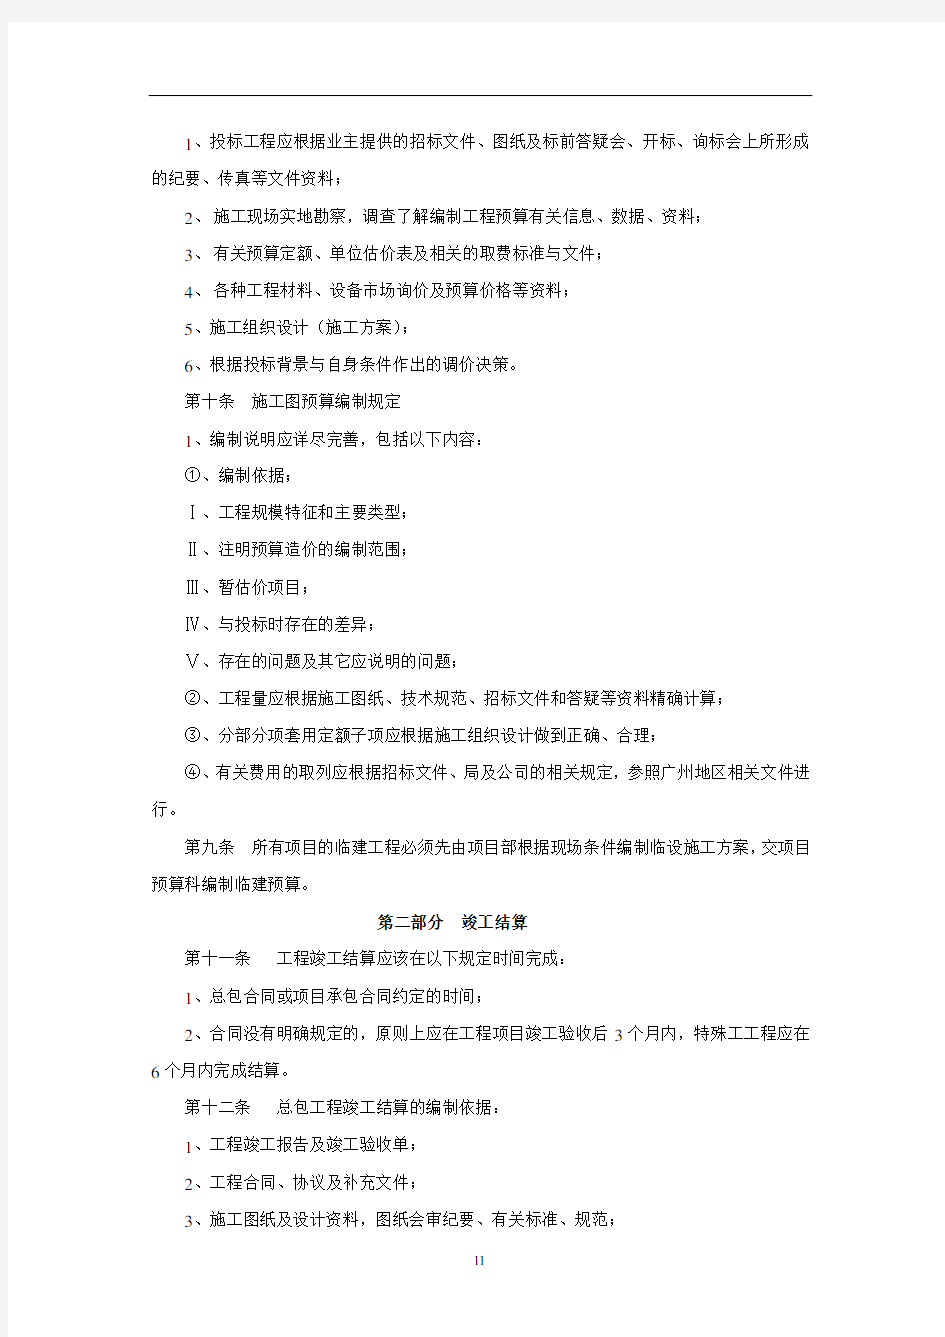 广州公司工程结算管理制度